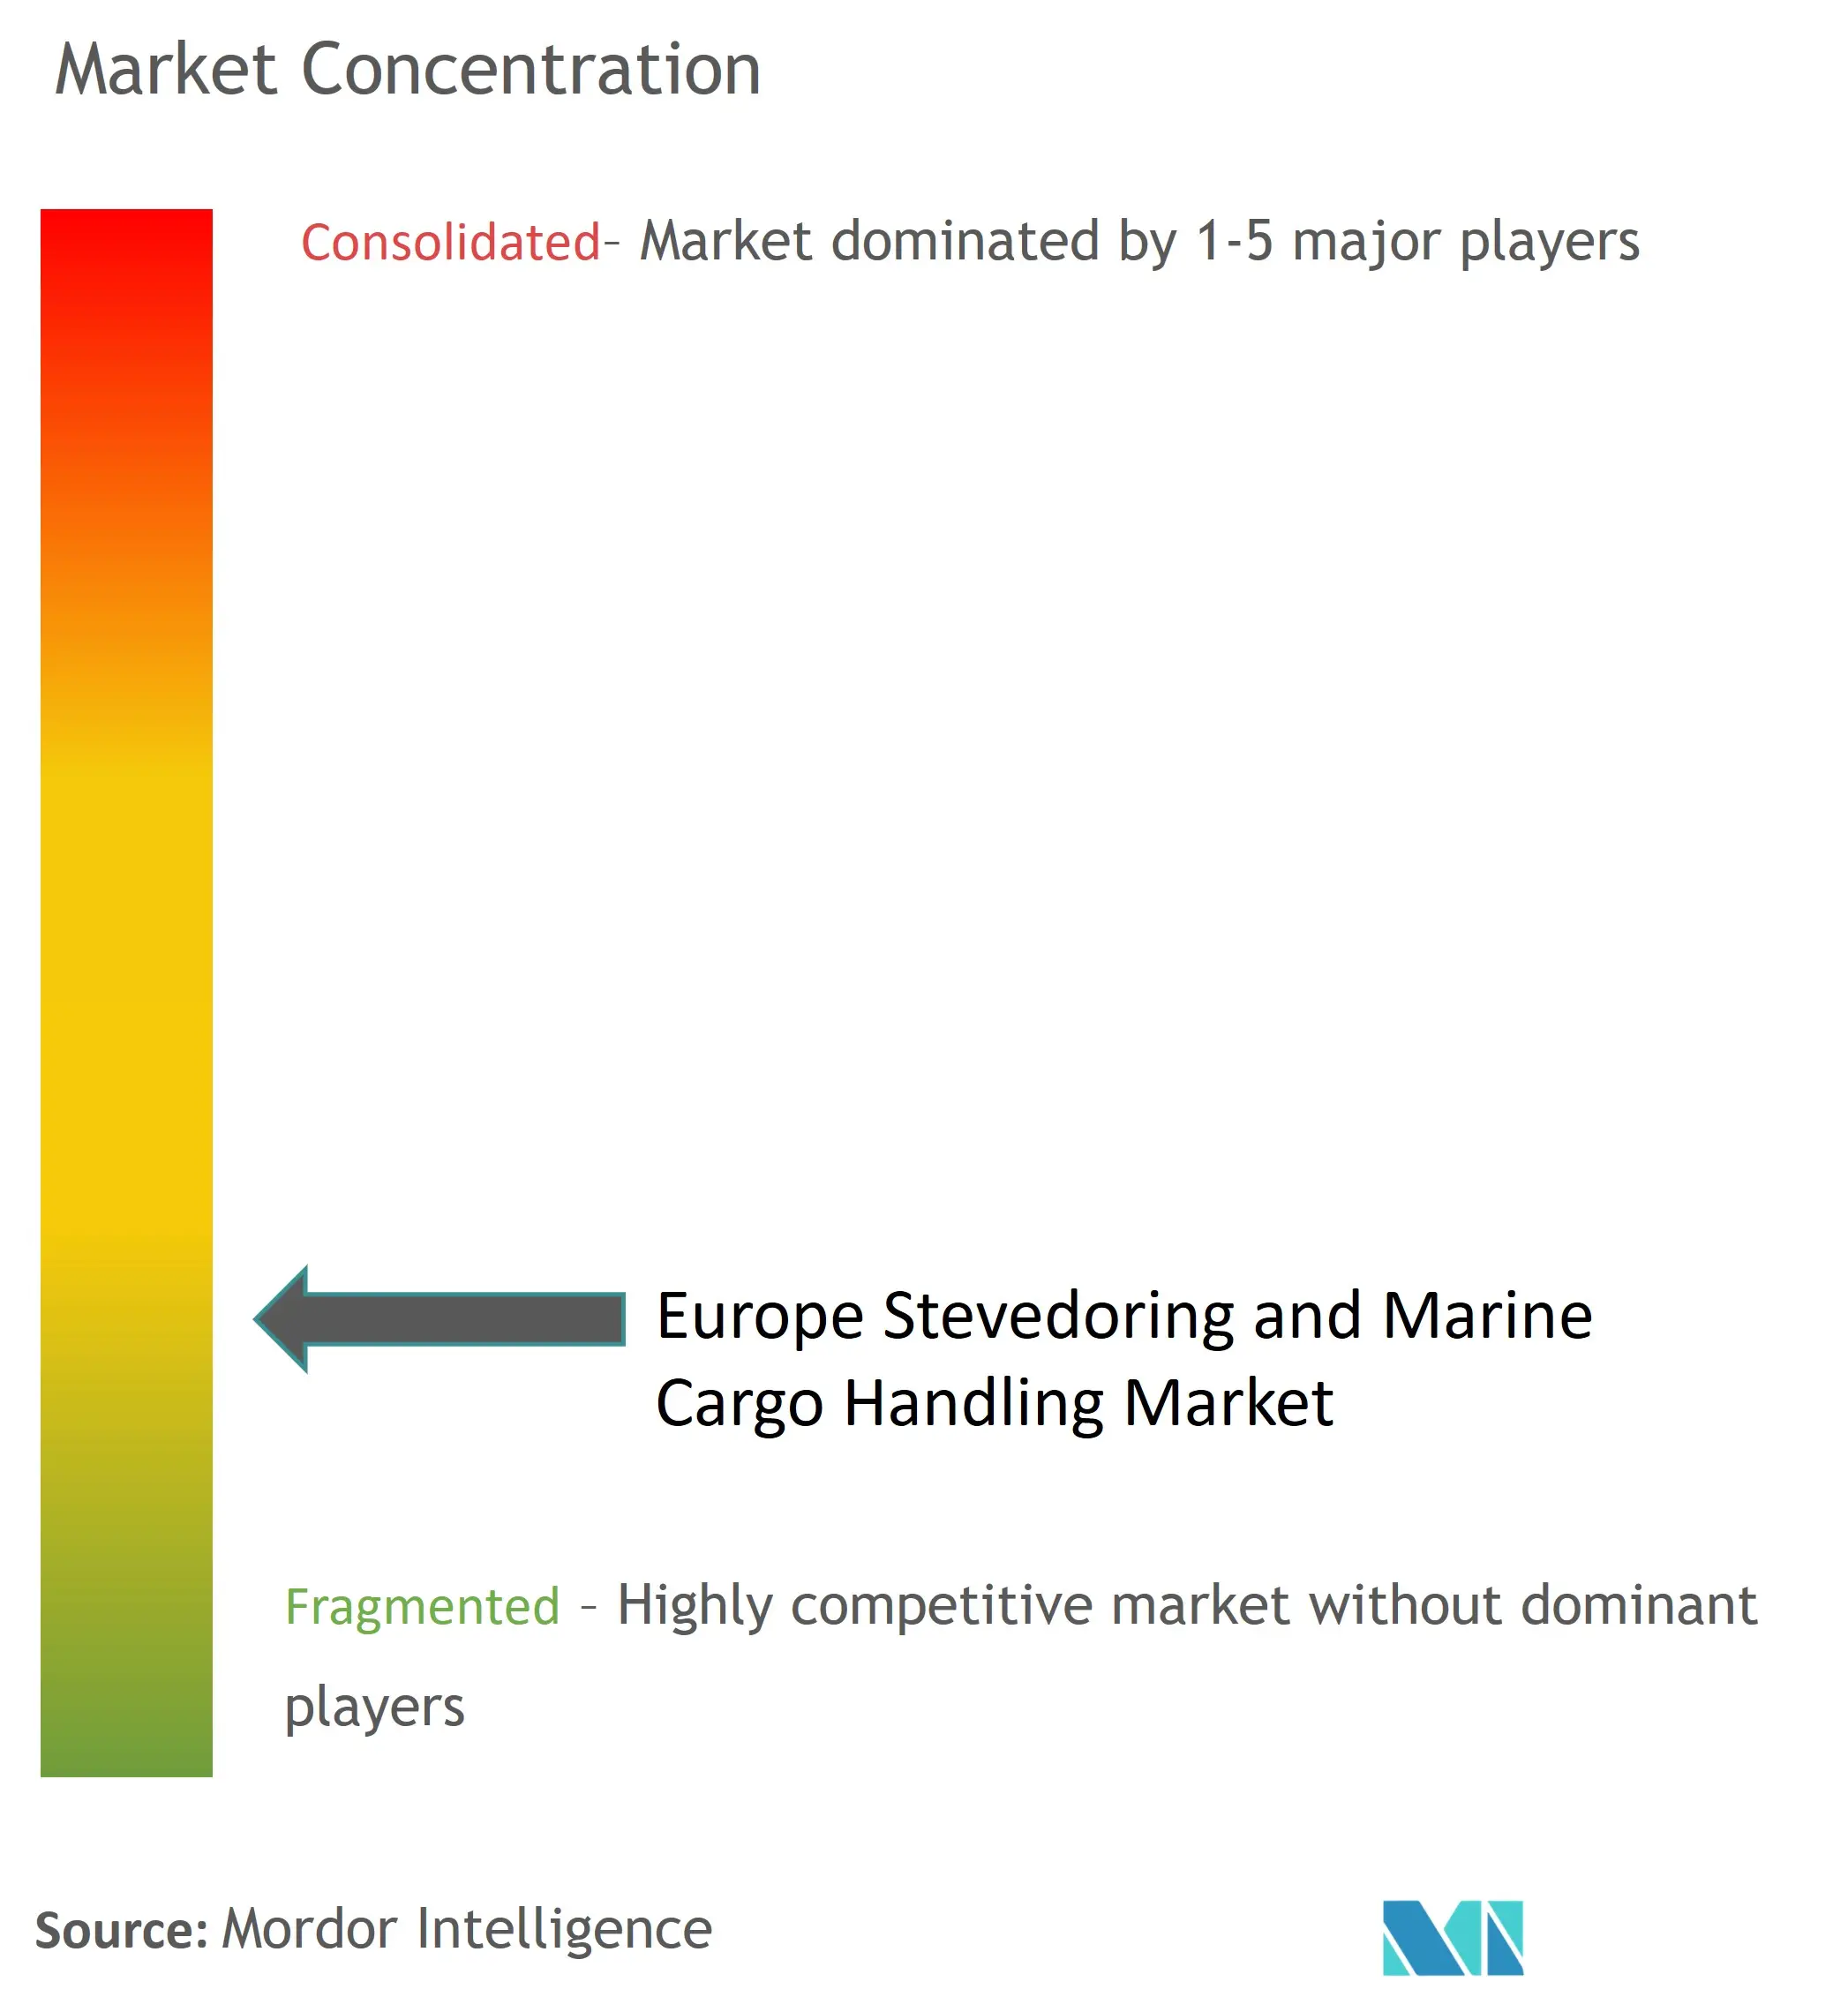 Europe Stevedoring and Marine Cargo Handling Market Concentration